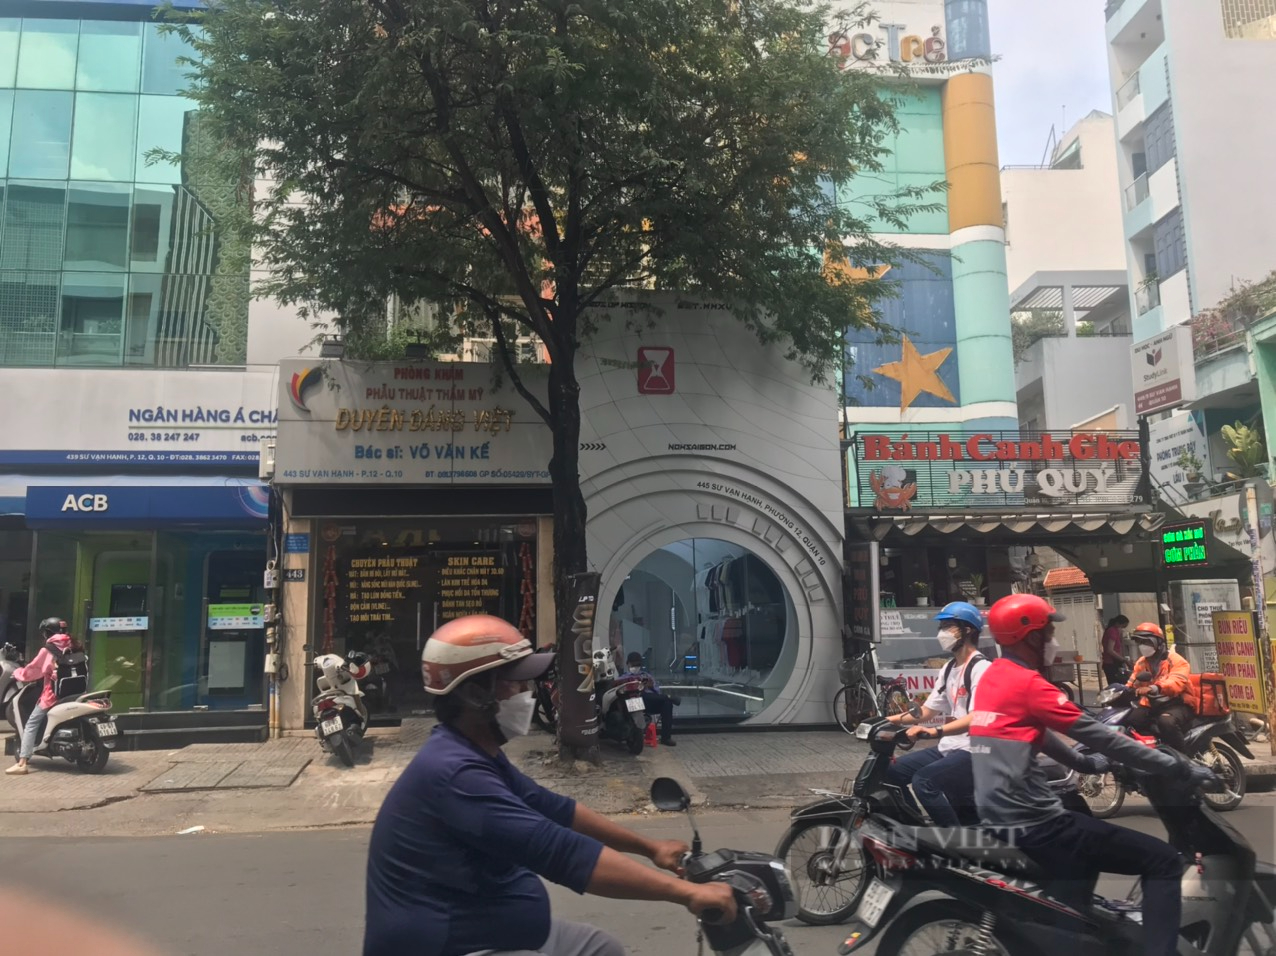 Hành trình tìm chỗ đứng của một thương hiệu thời trang ở Sài Gòn - Ảnh 1.